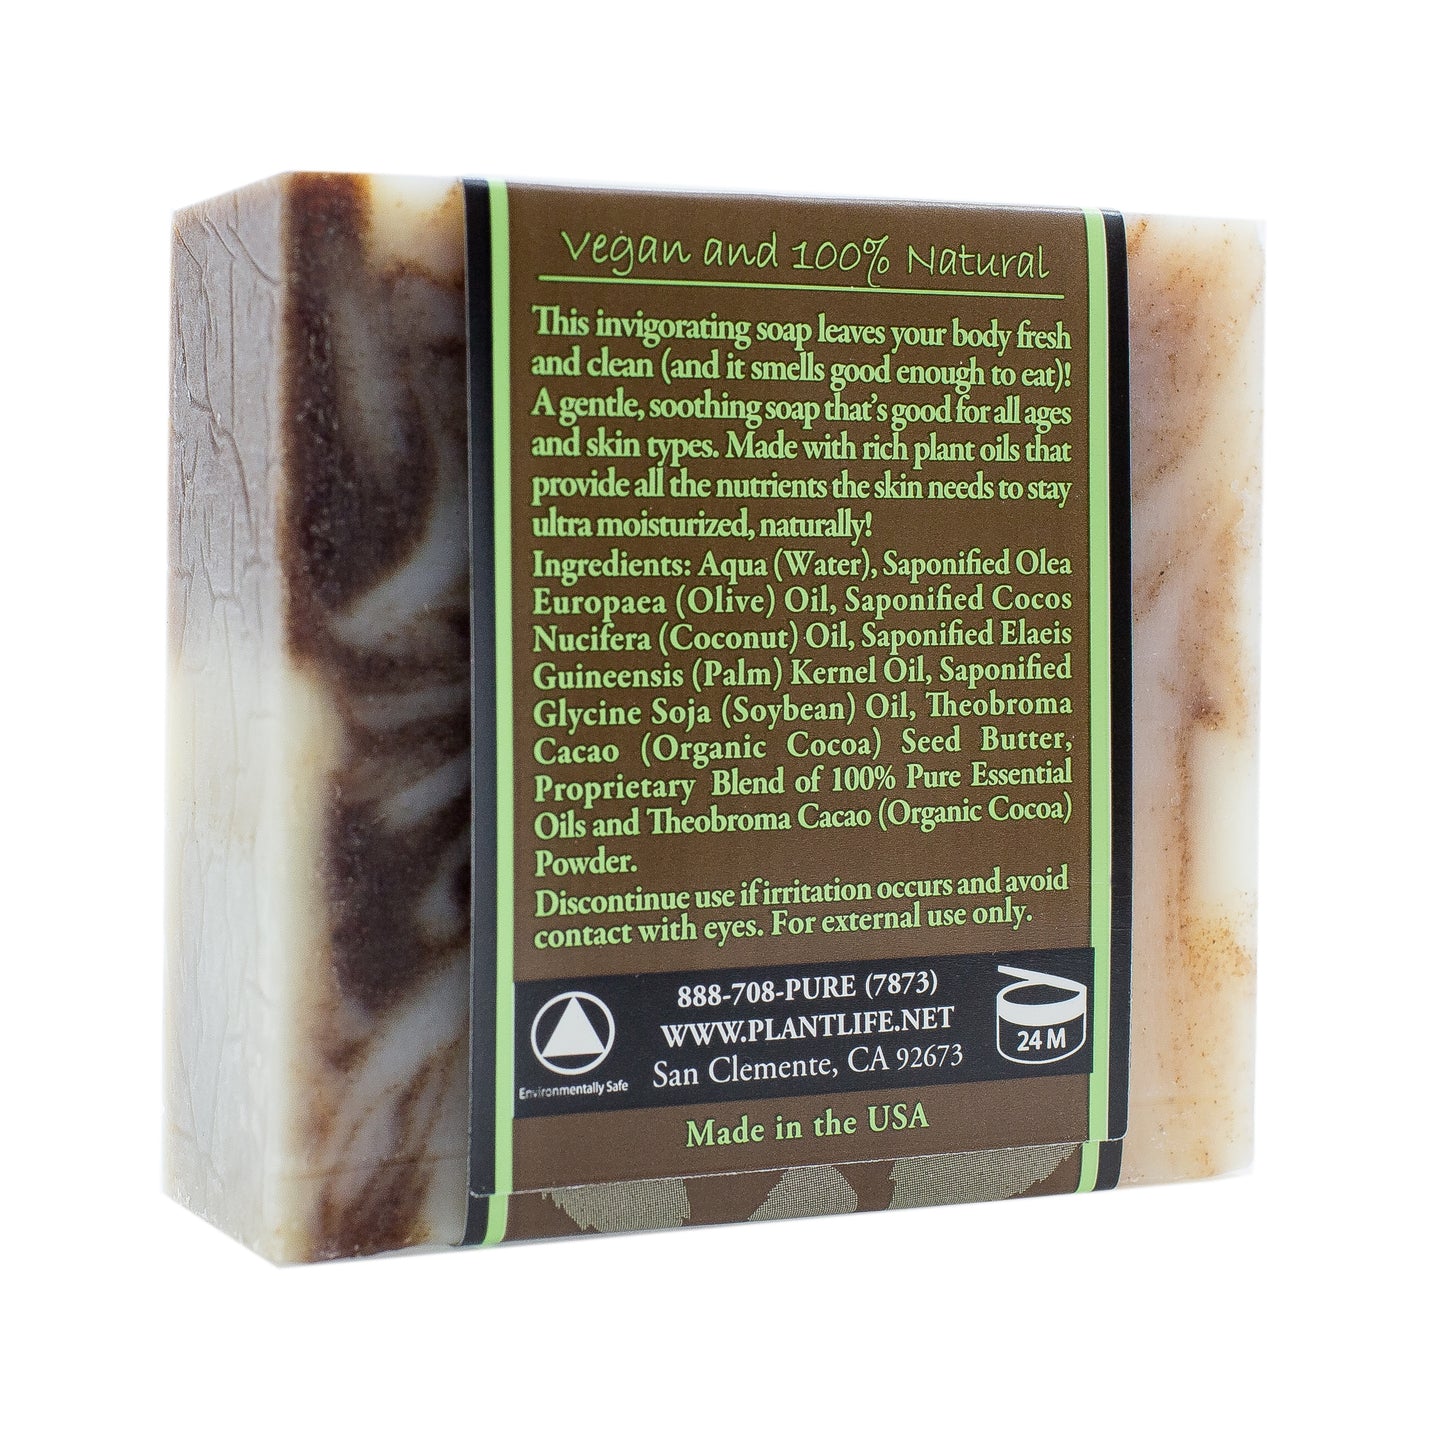 Cocoa Mint Natural Bar Soap